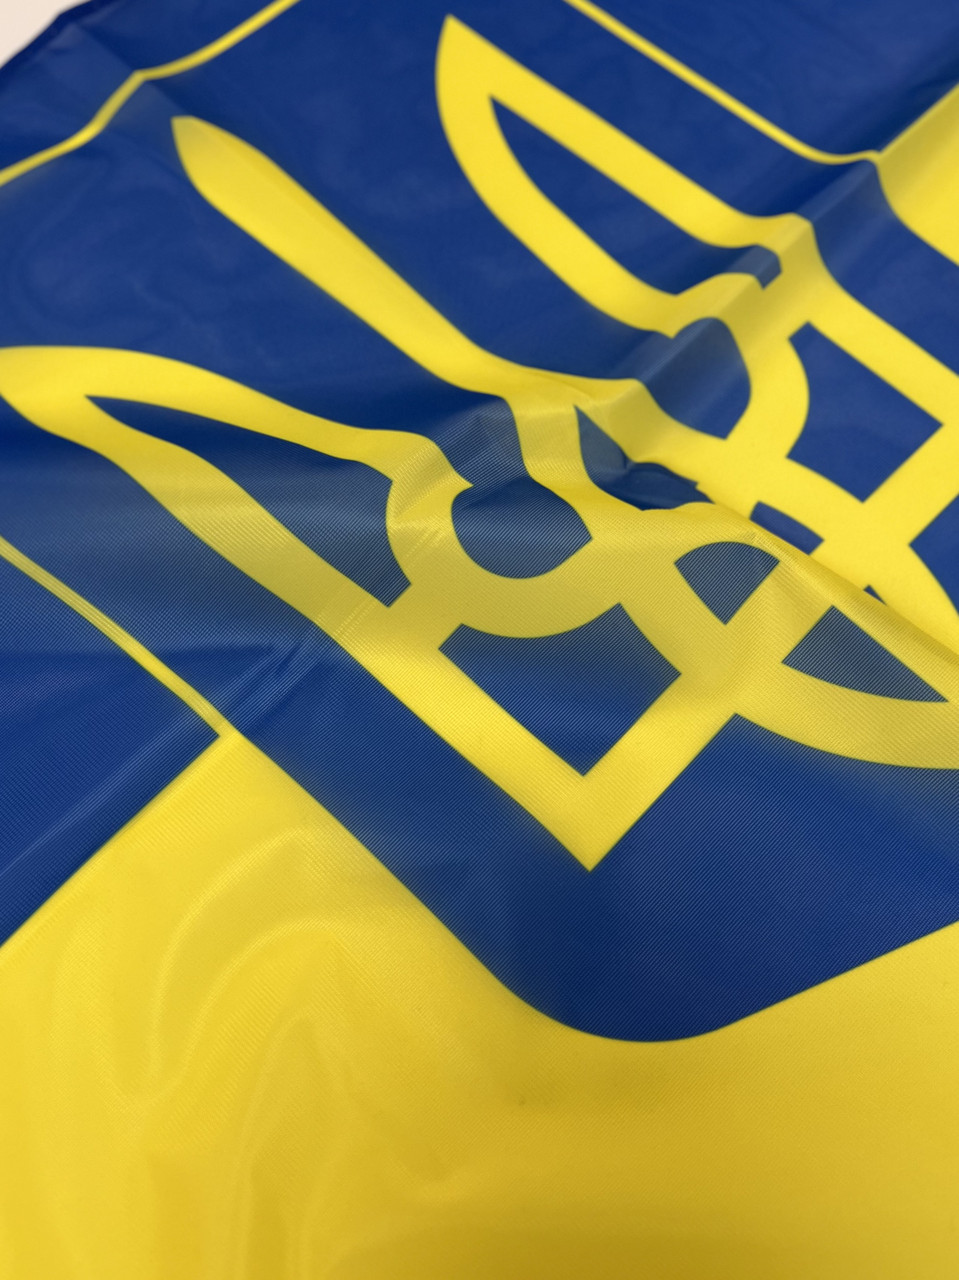 Прапор України жовто-блакитний з гербом (тризубом) 63*83